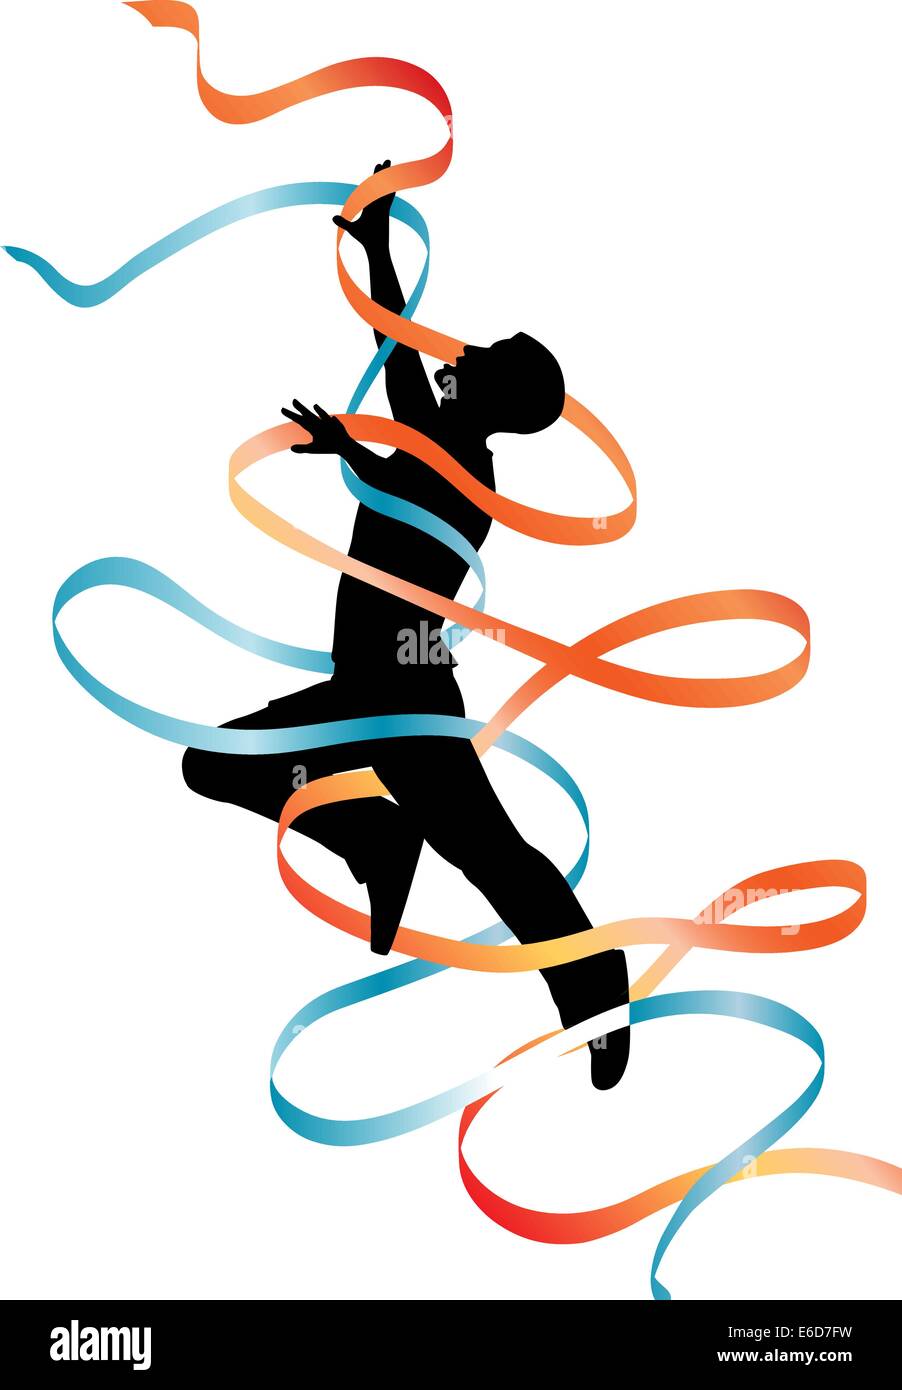 Bearbeitbares Vektor Silhouette eines springenden Menschen mit fließenden Bändern Stock Vektor